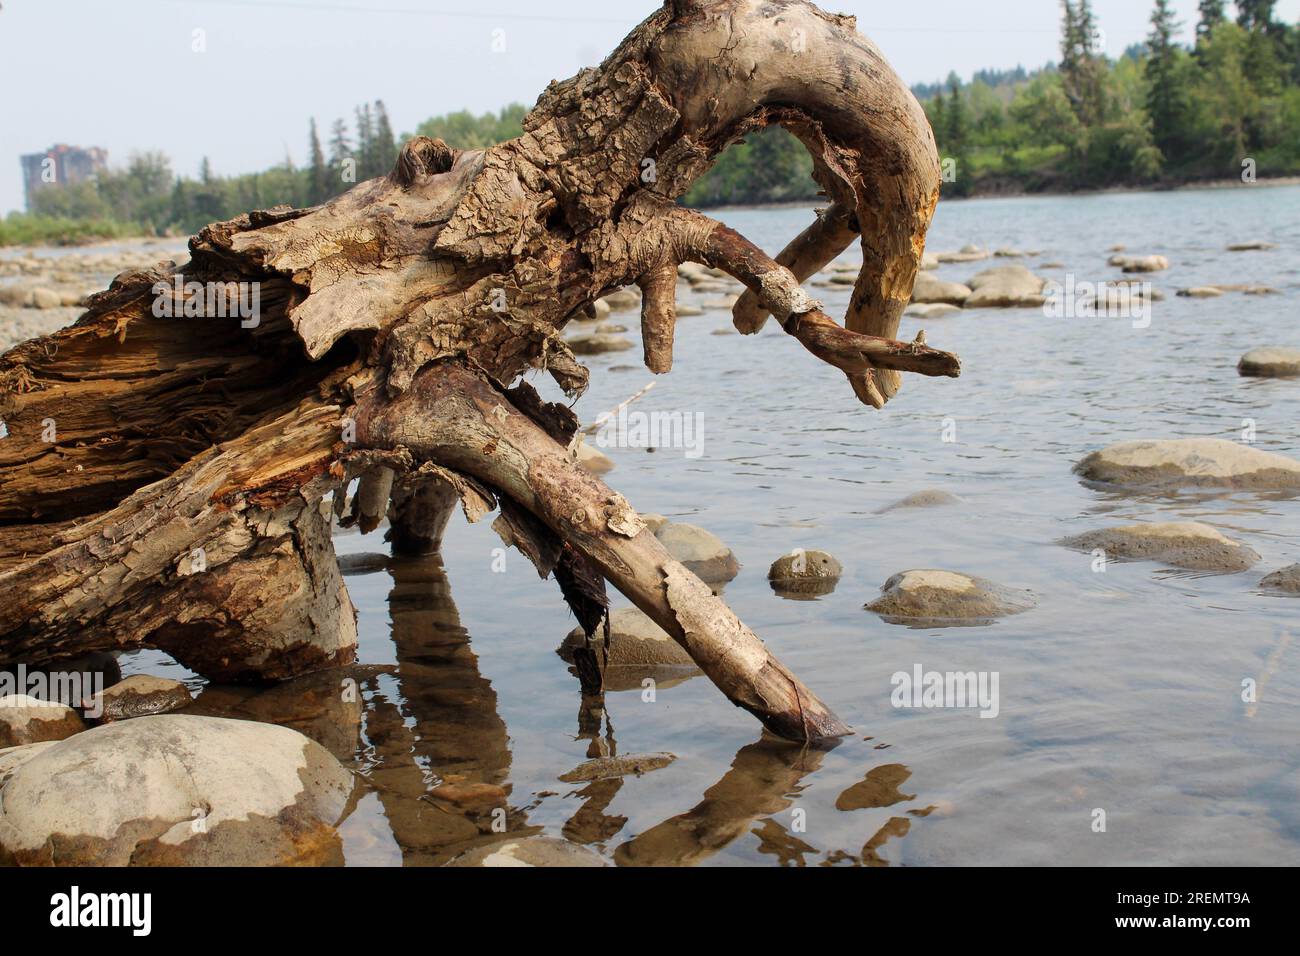 Un arbre mort est tombé dans une rivière, il ressemble à un animal buvant de l'eau. Banque D'Images